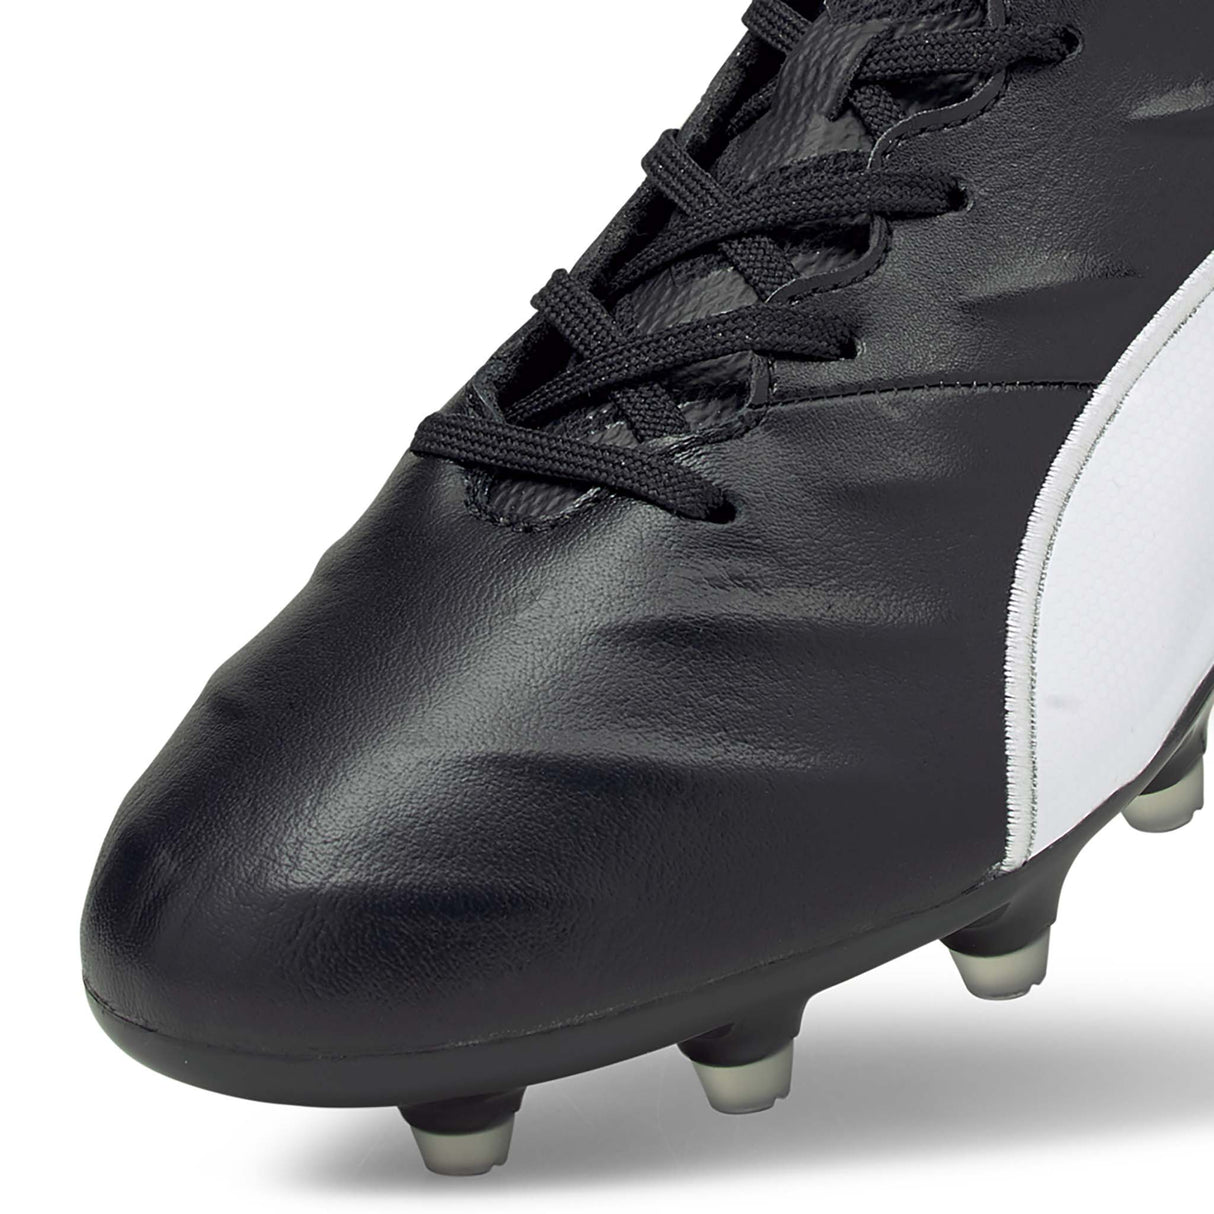 Puma King Pro 21 FG souliers de soccer à crampons noir blanc pointe